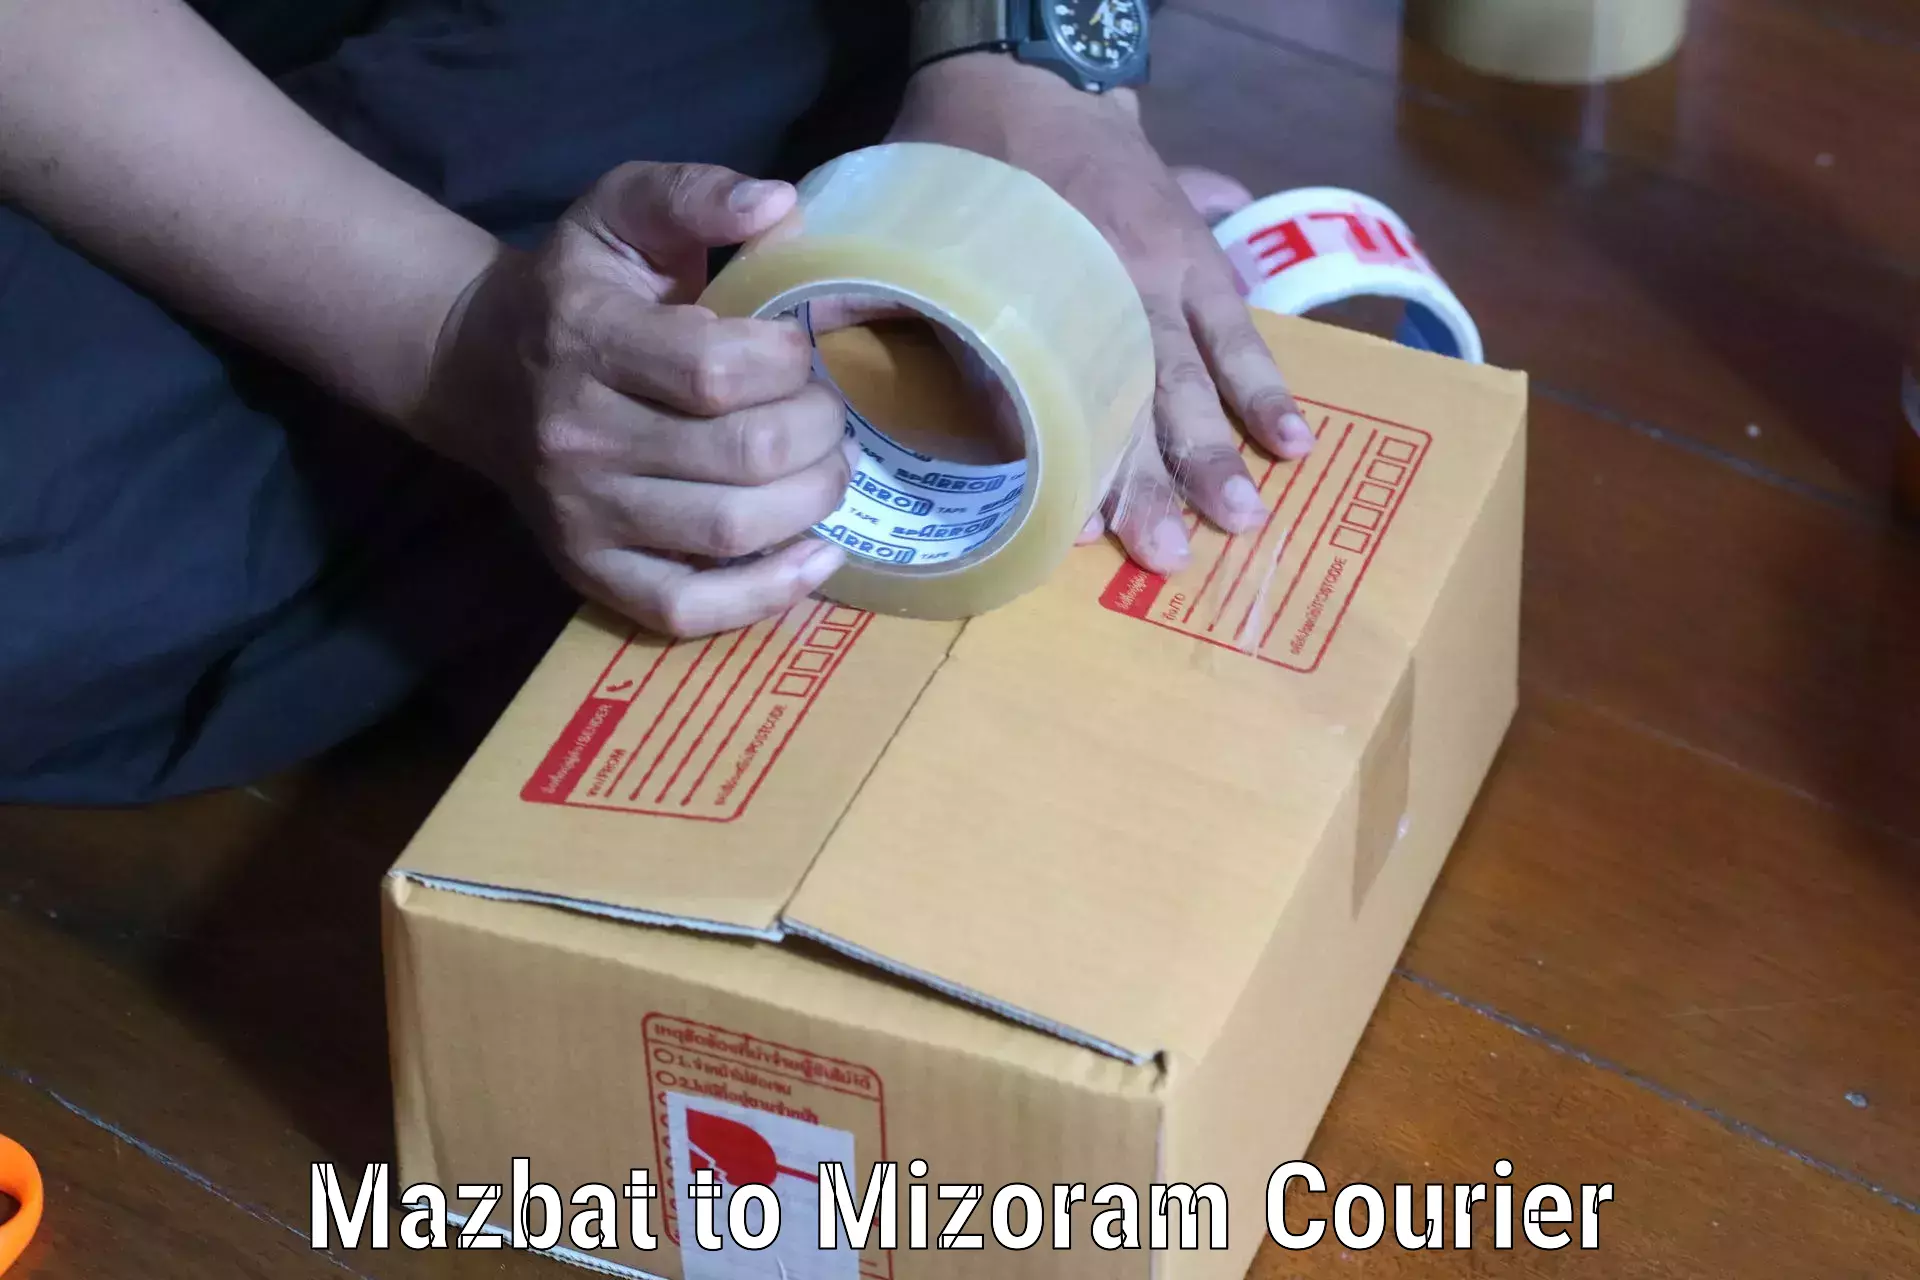 Express logistics providers Mazbat to Darlawn